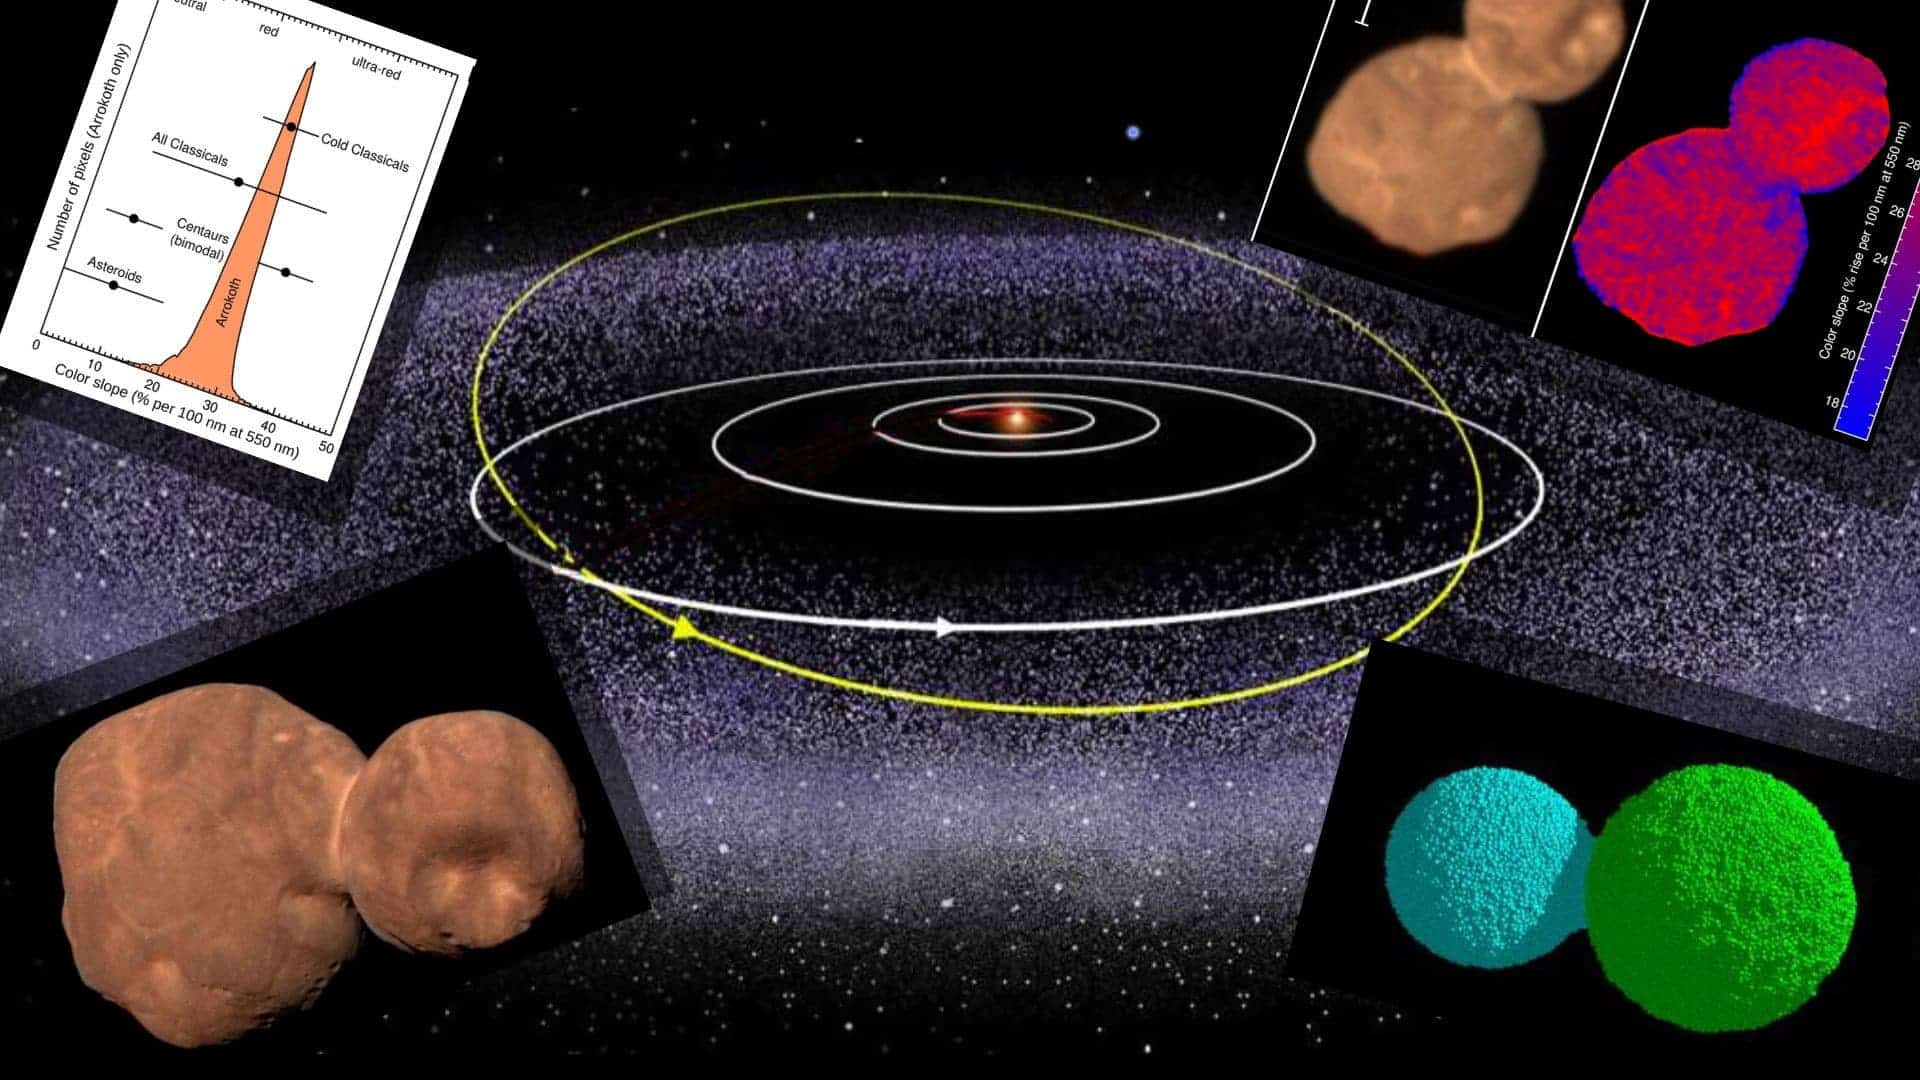 Focusing on Arrokoth promises to reveal the Kuiper Belt's secrets